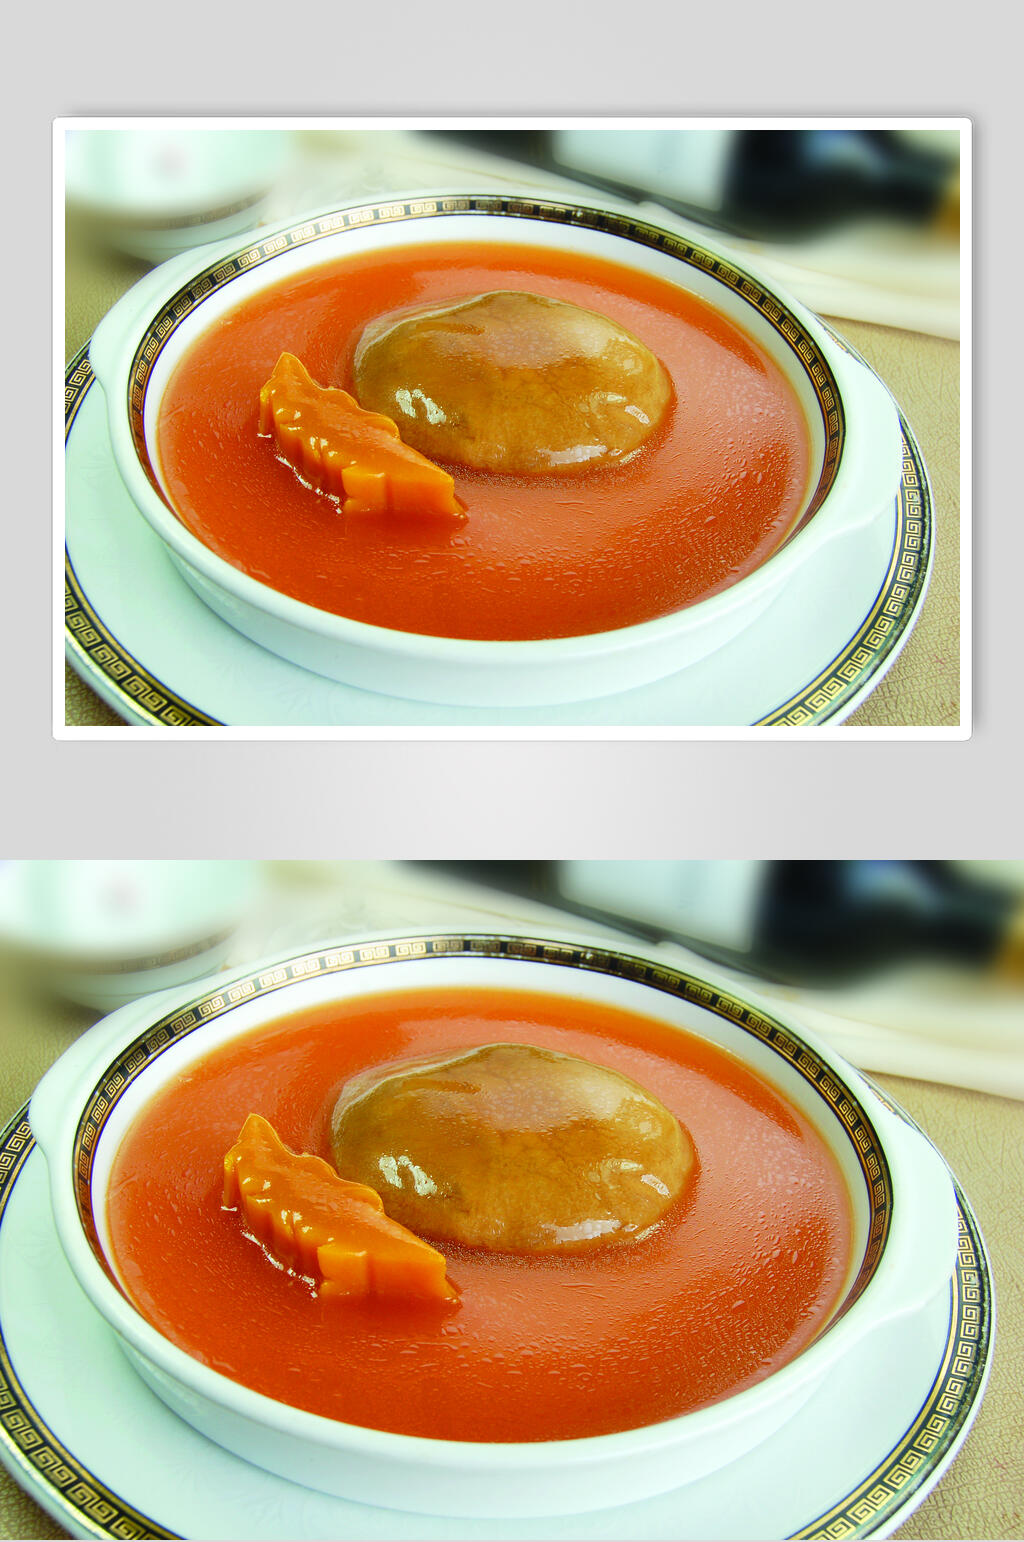 鲍鱼翅鲍汁百灵菇美食高清图片